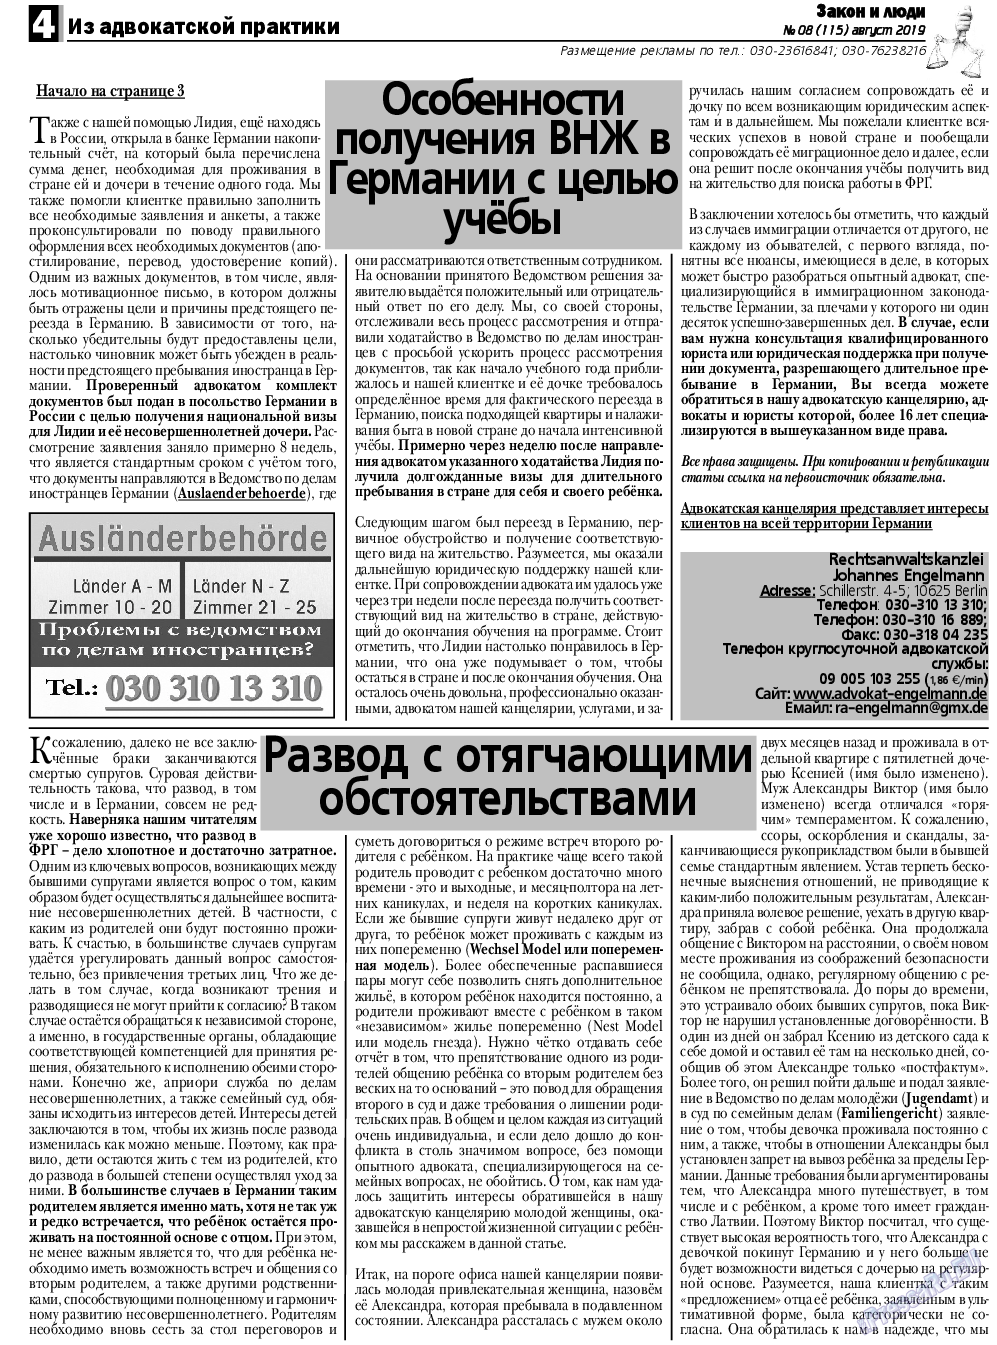 Закон и люди, газета. 2019 №8 стр.4